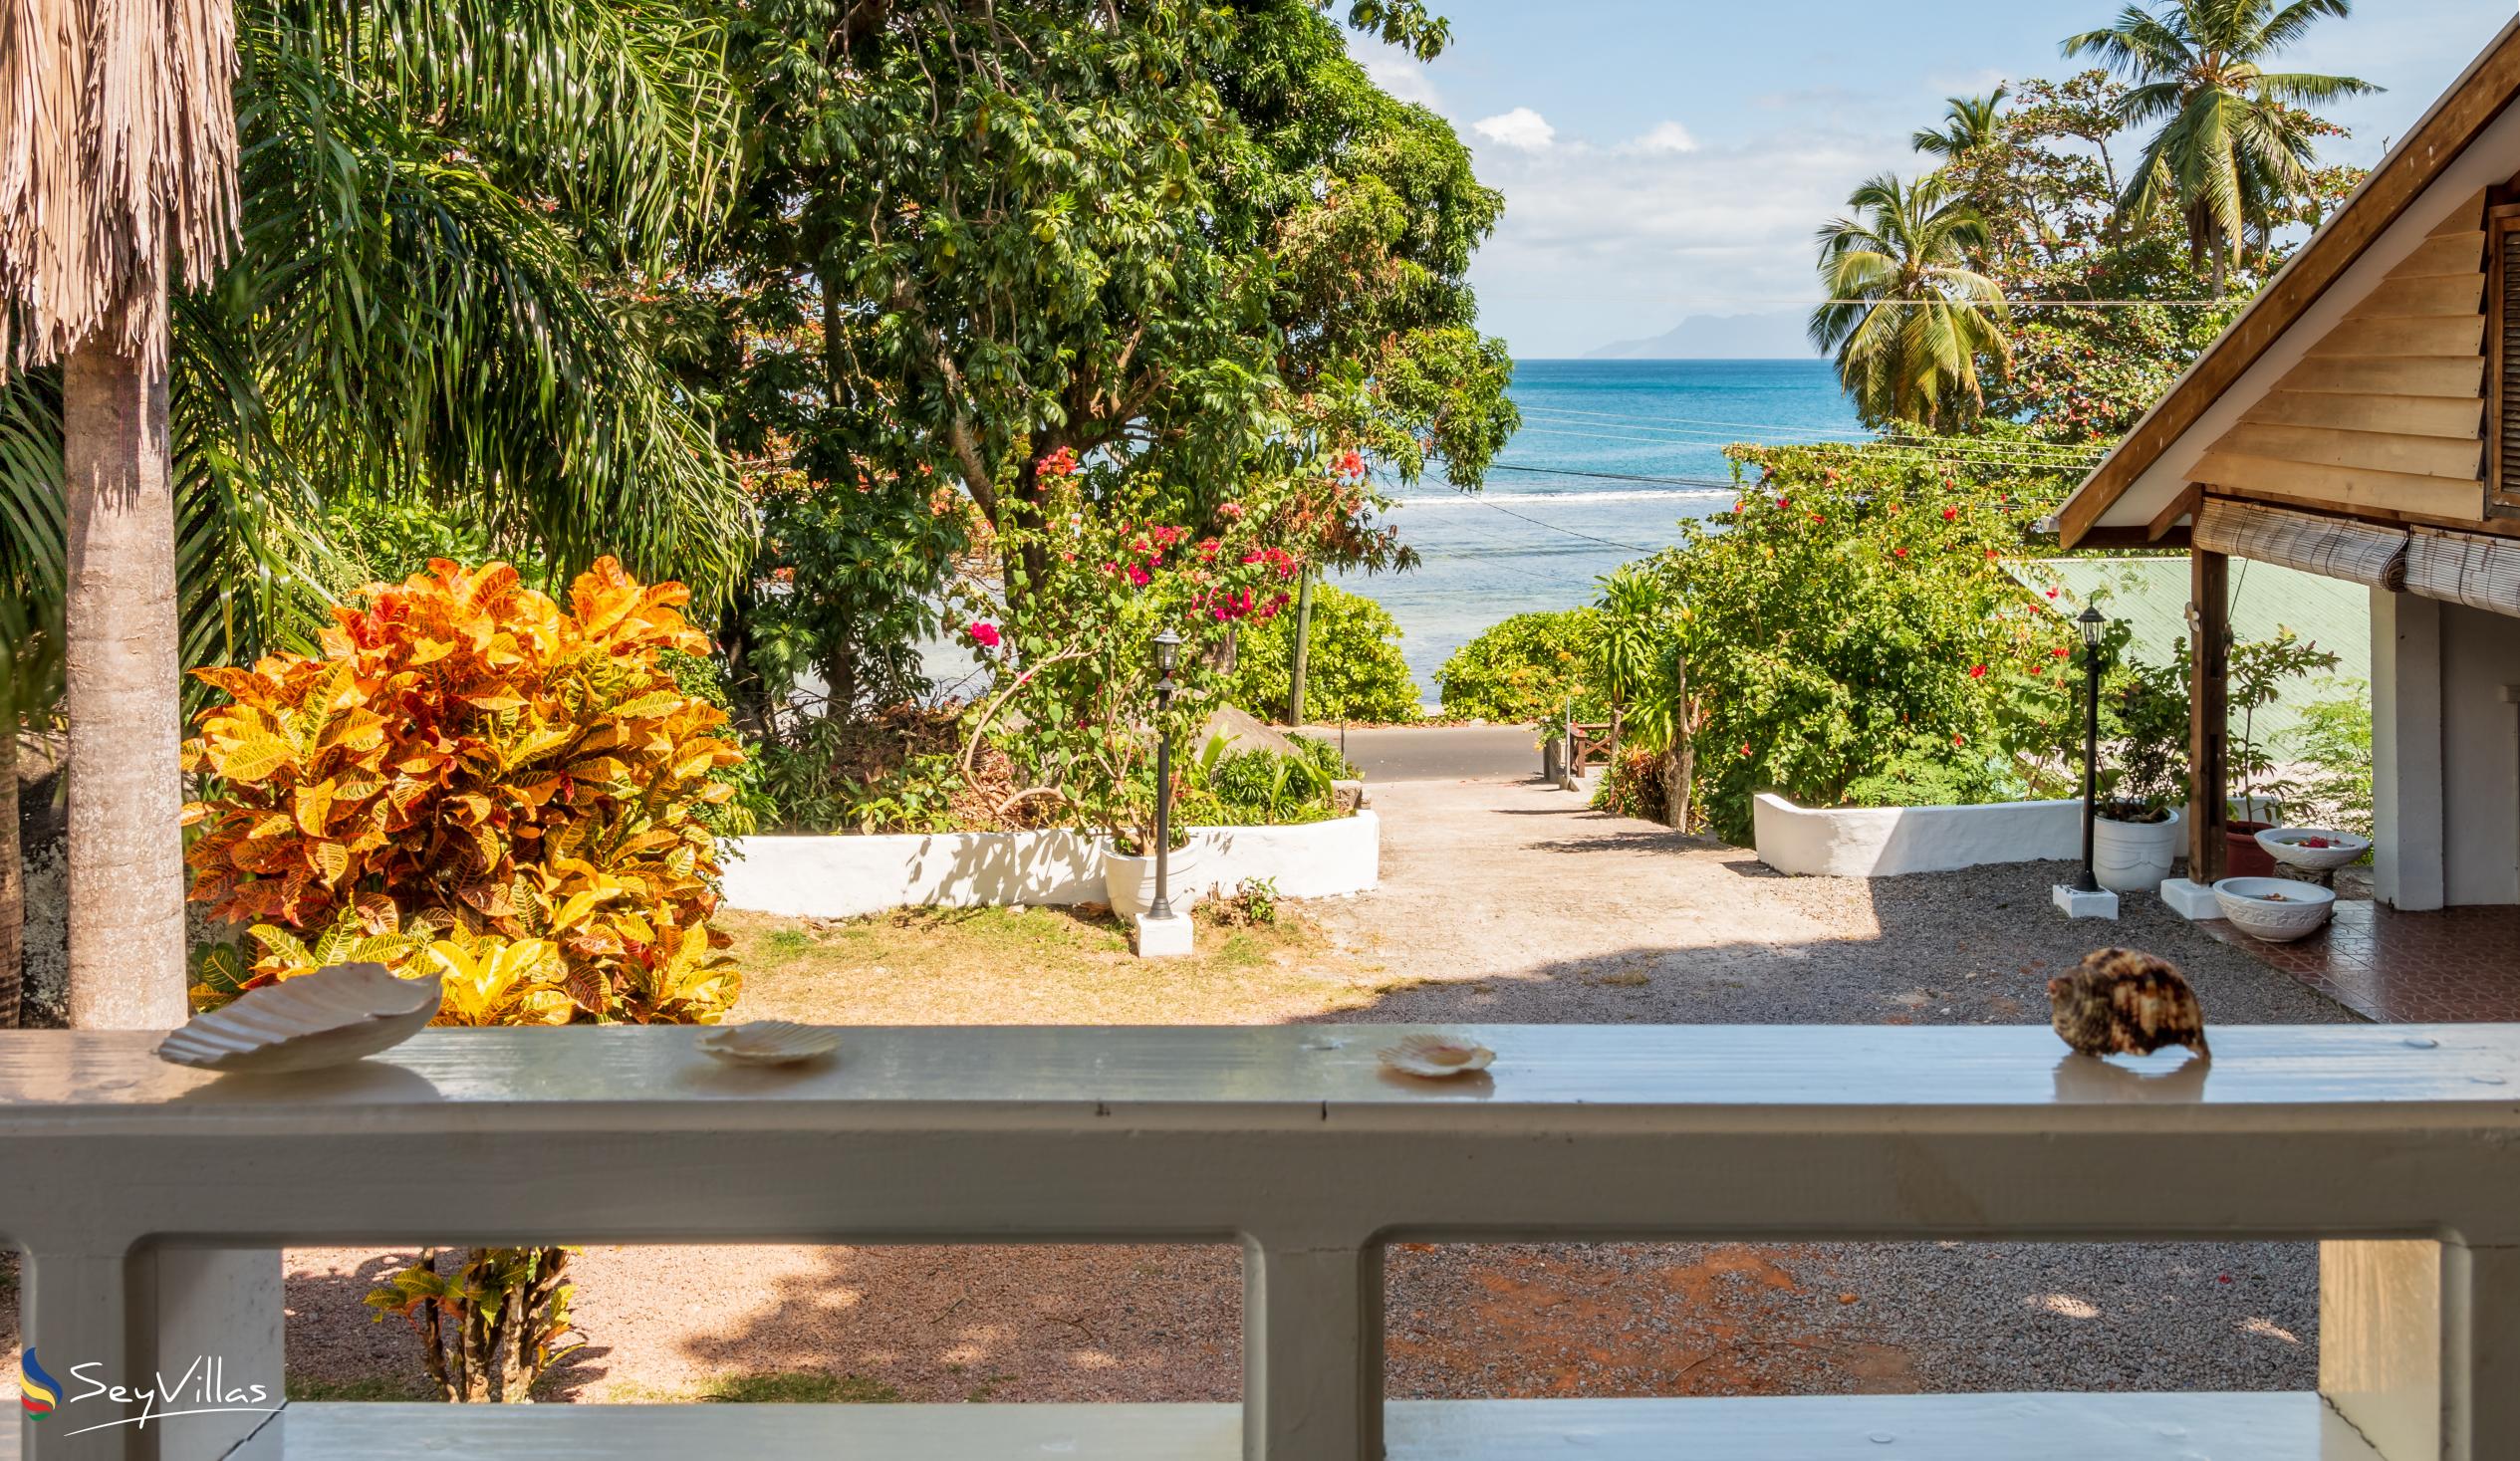 Foto 40: The Beach House (Chateau Martha) - Maison de vacances avec 2 chambres à coucher - Mahé (Seychelles)